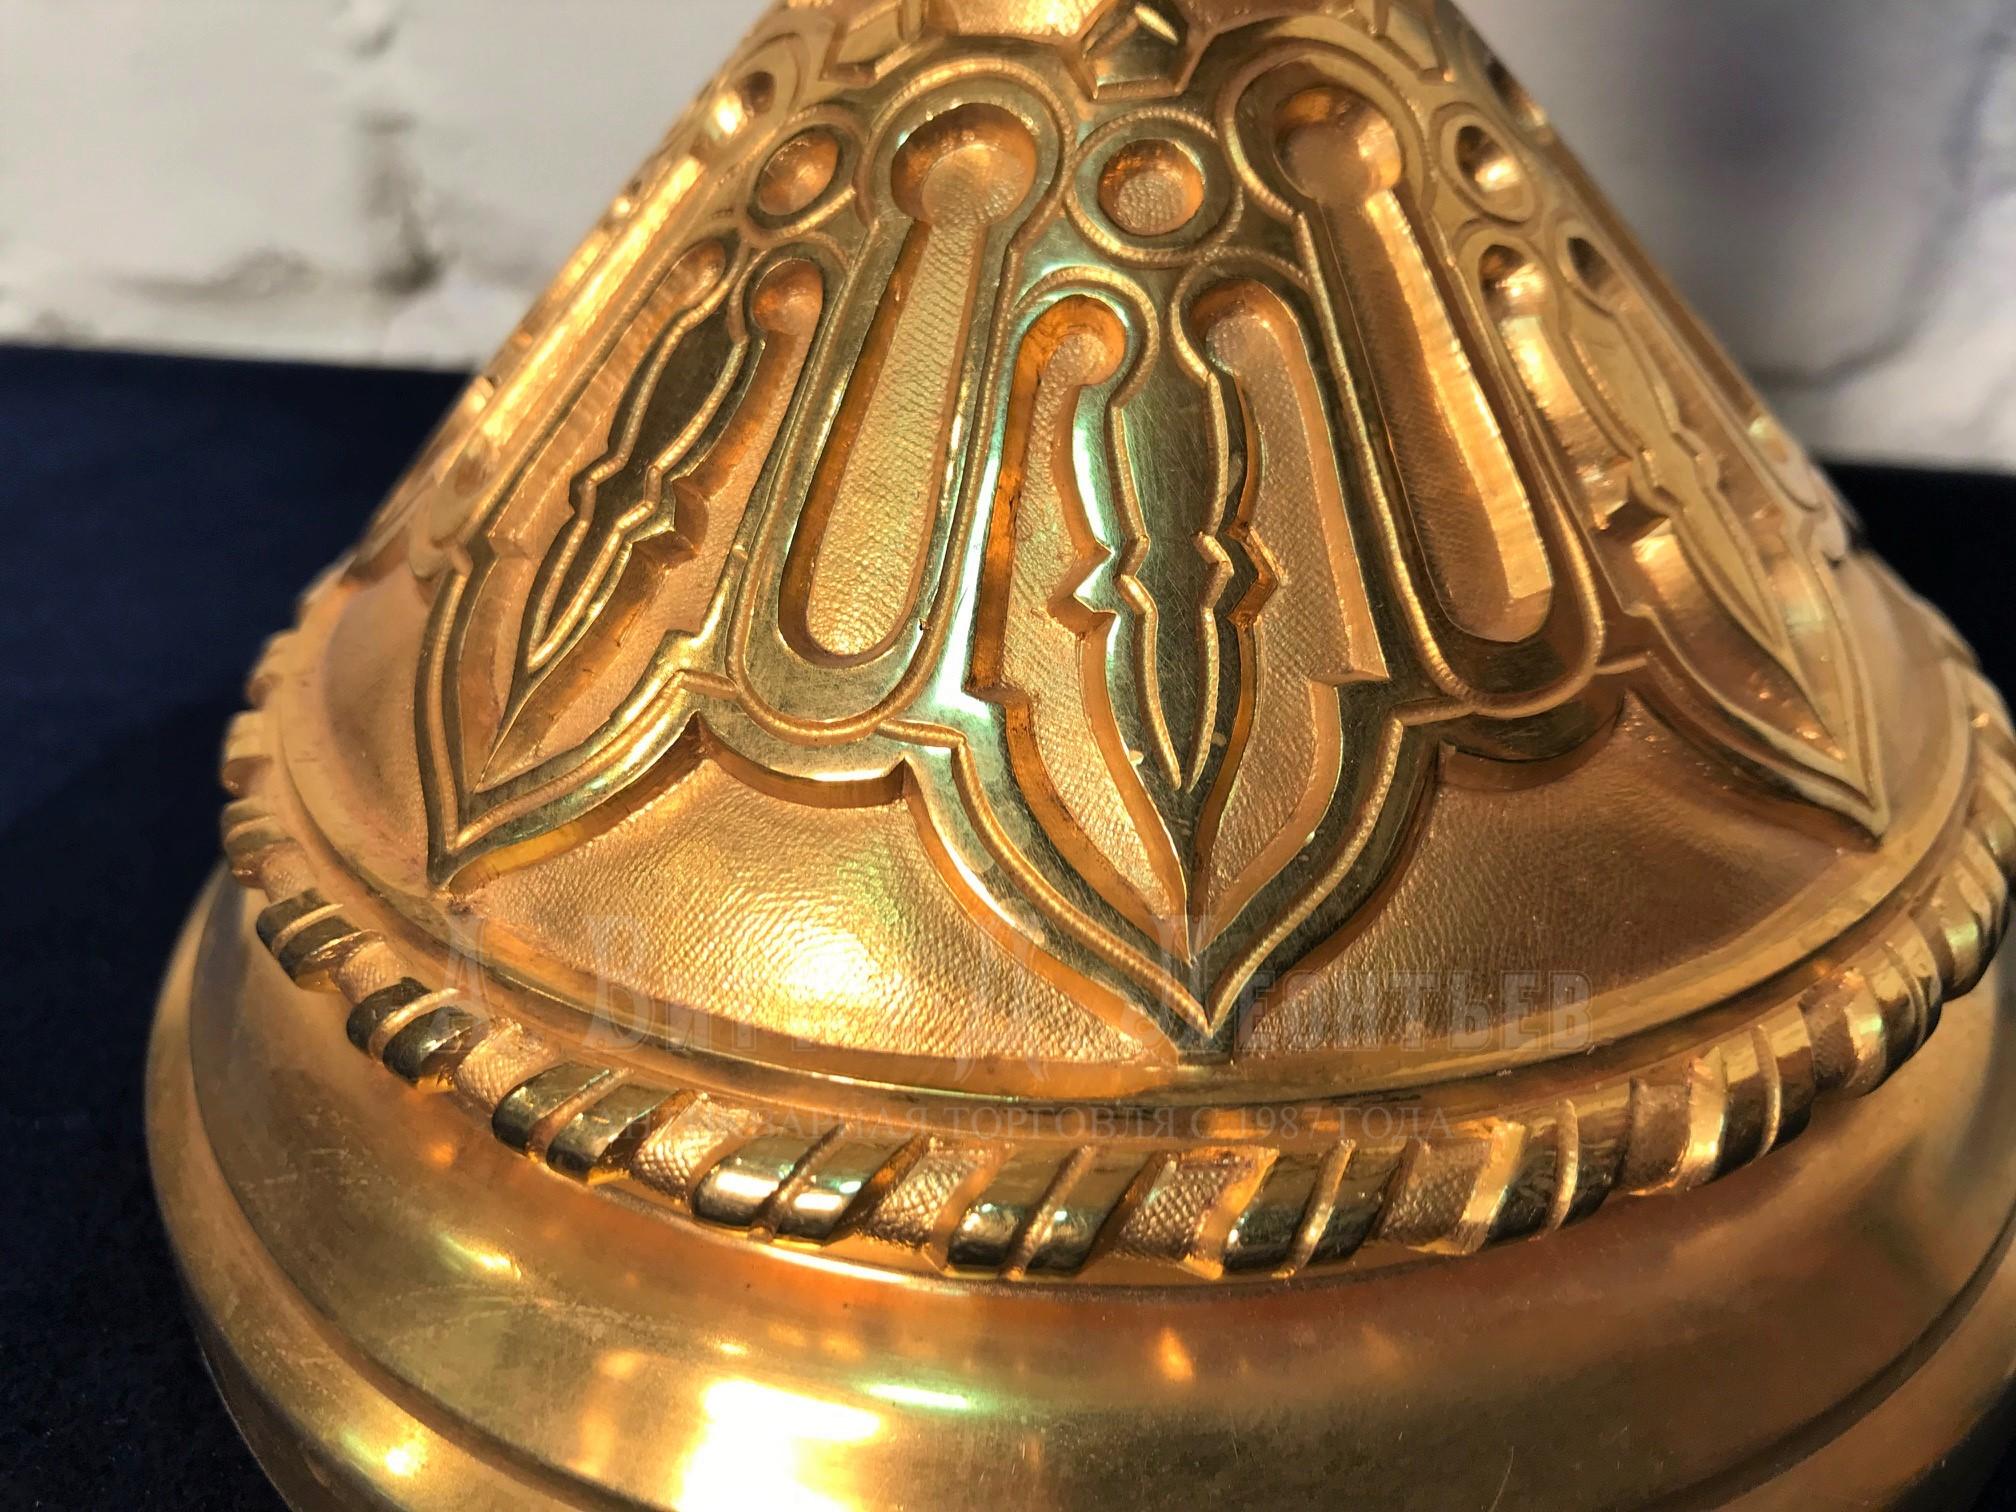 Лампа керосиновая в русском стиле бронза золоченая Мастерская А.Соколова